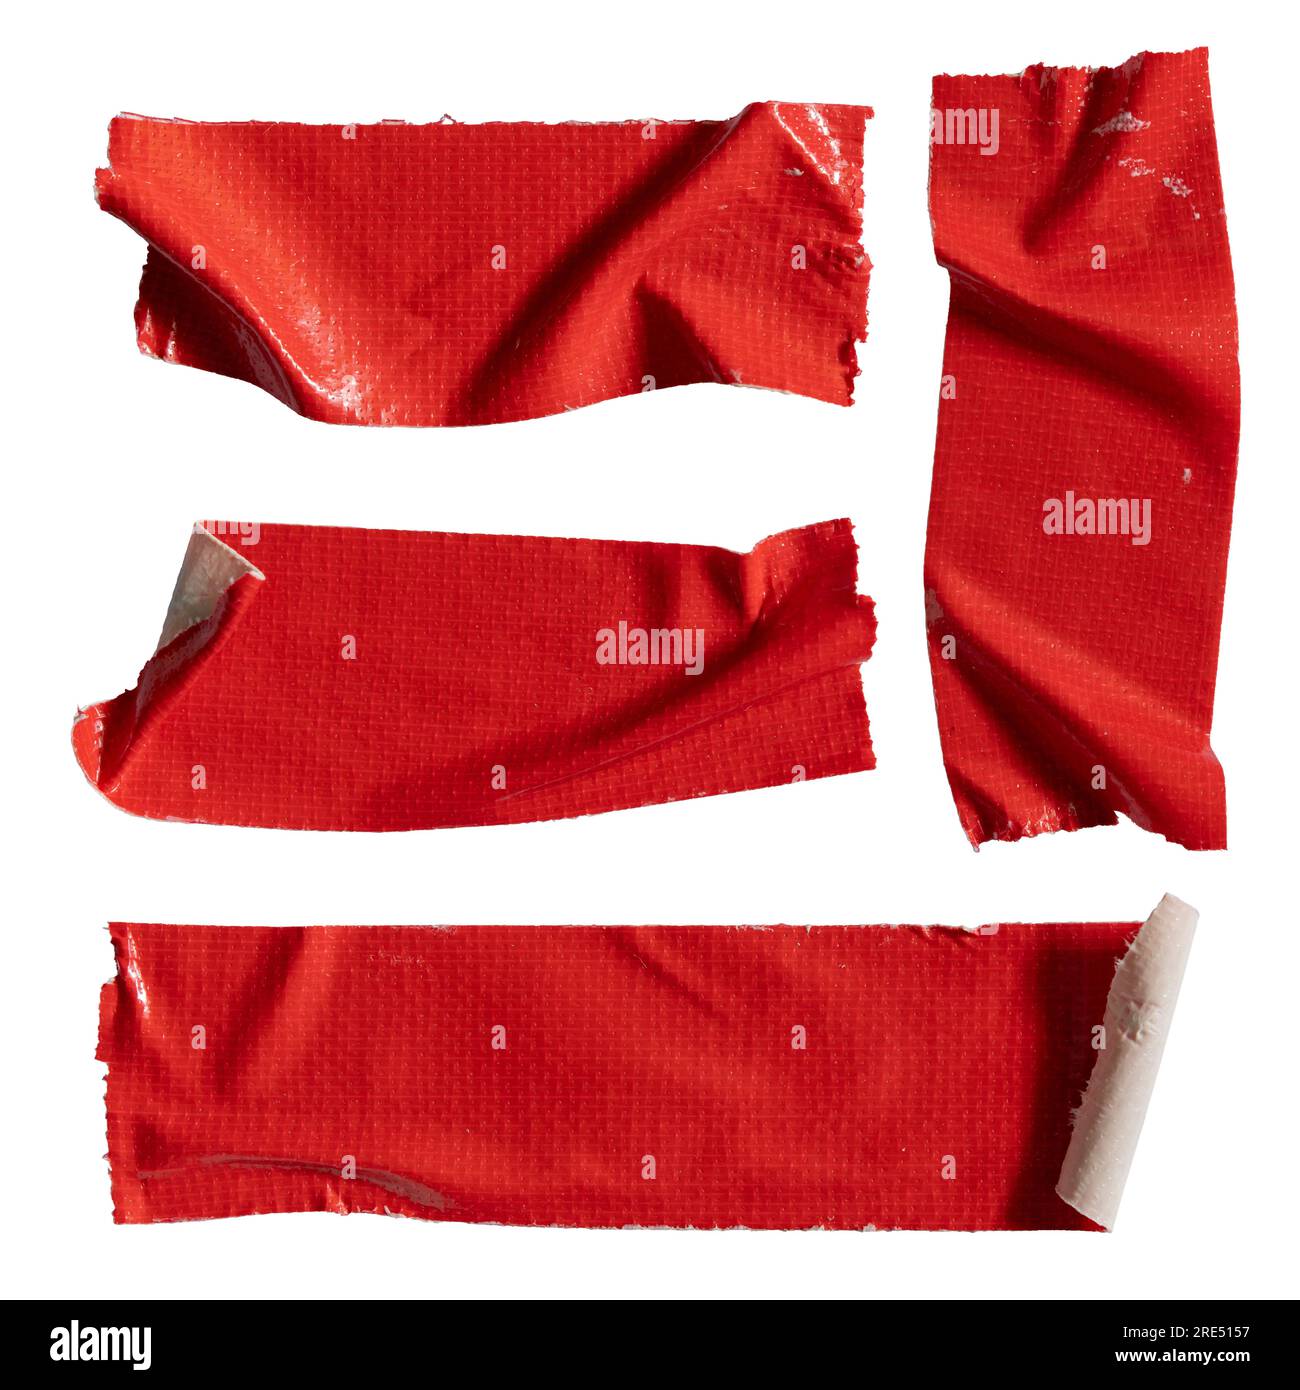 Nastri in tessuto rosso sbucciati su sfondo bianco con percorso di ritaglio Foto Stock